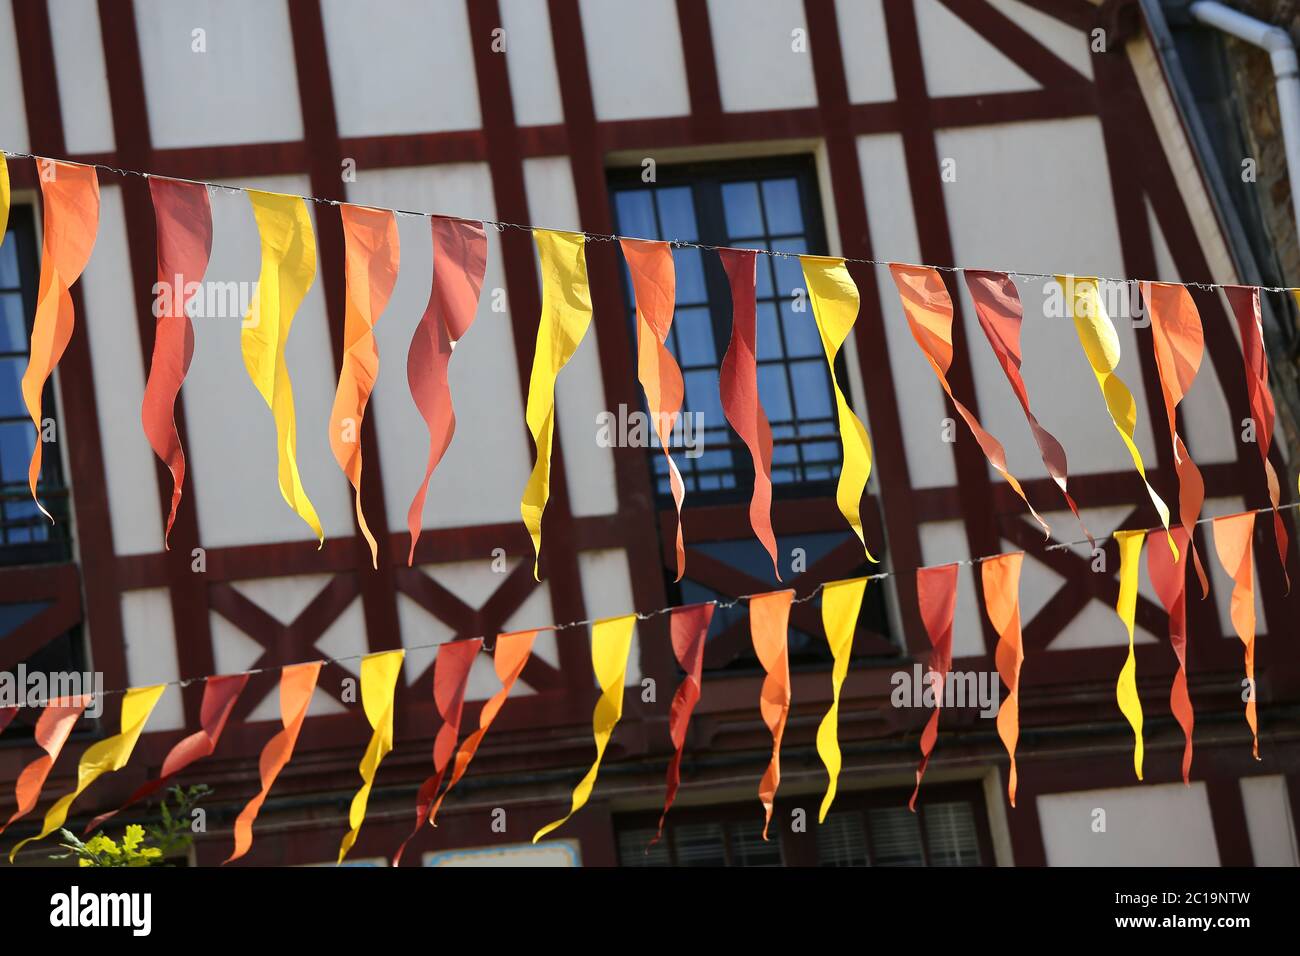 Façade d'une maison typique bretonne avec poutres en bois et banderoles à l'avant-garde Banque D'Images